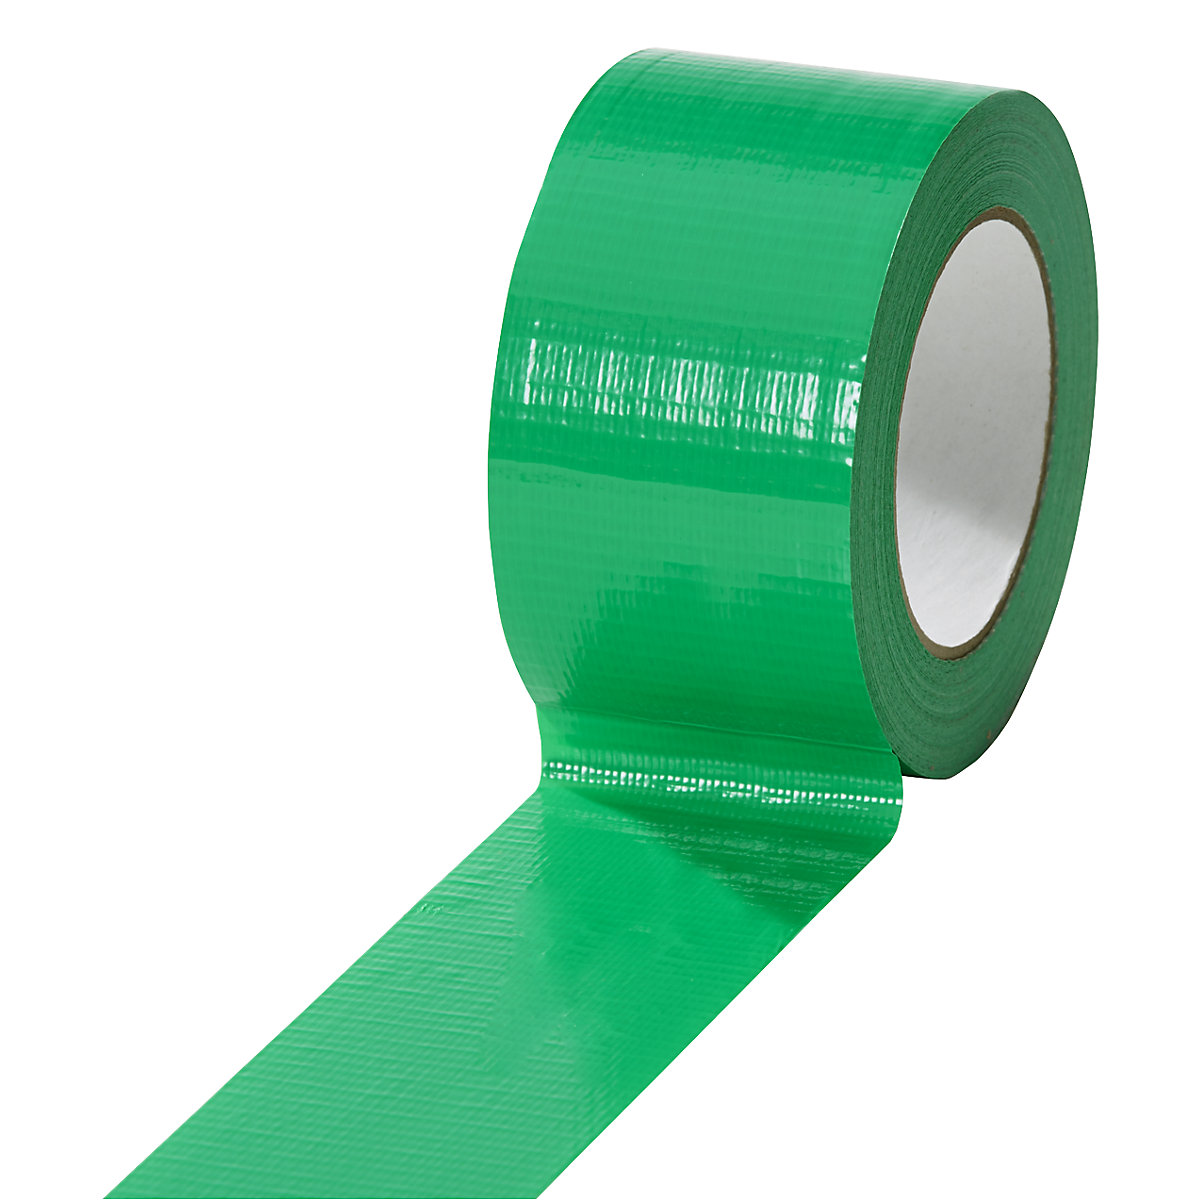 Gewebeband, in verschiedenen Farben, VE 18 Rollen, grün, Bandbreite 50 mm-8